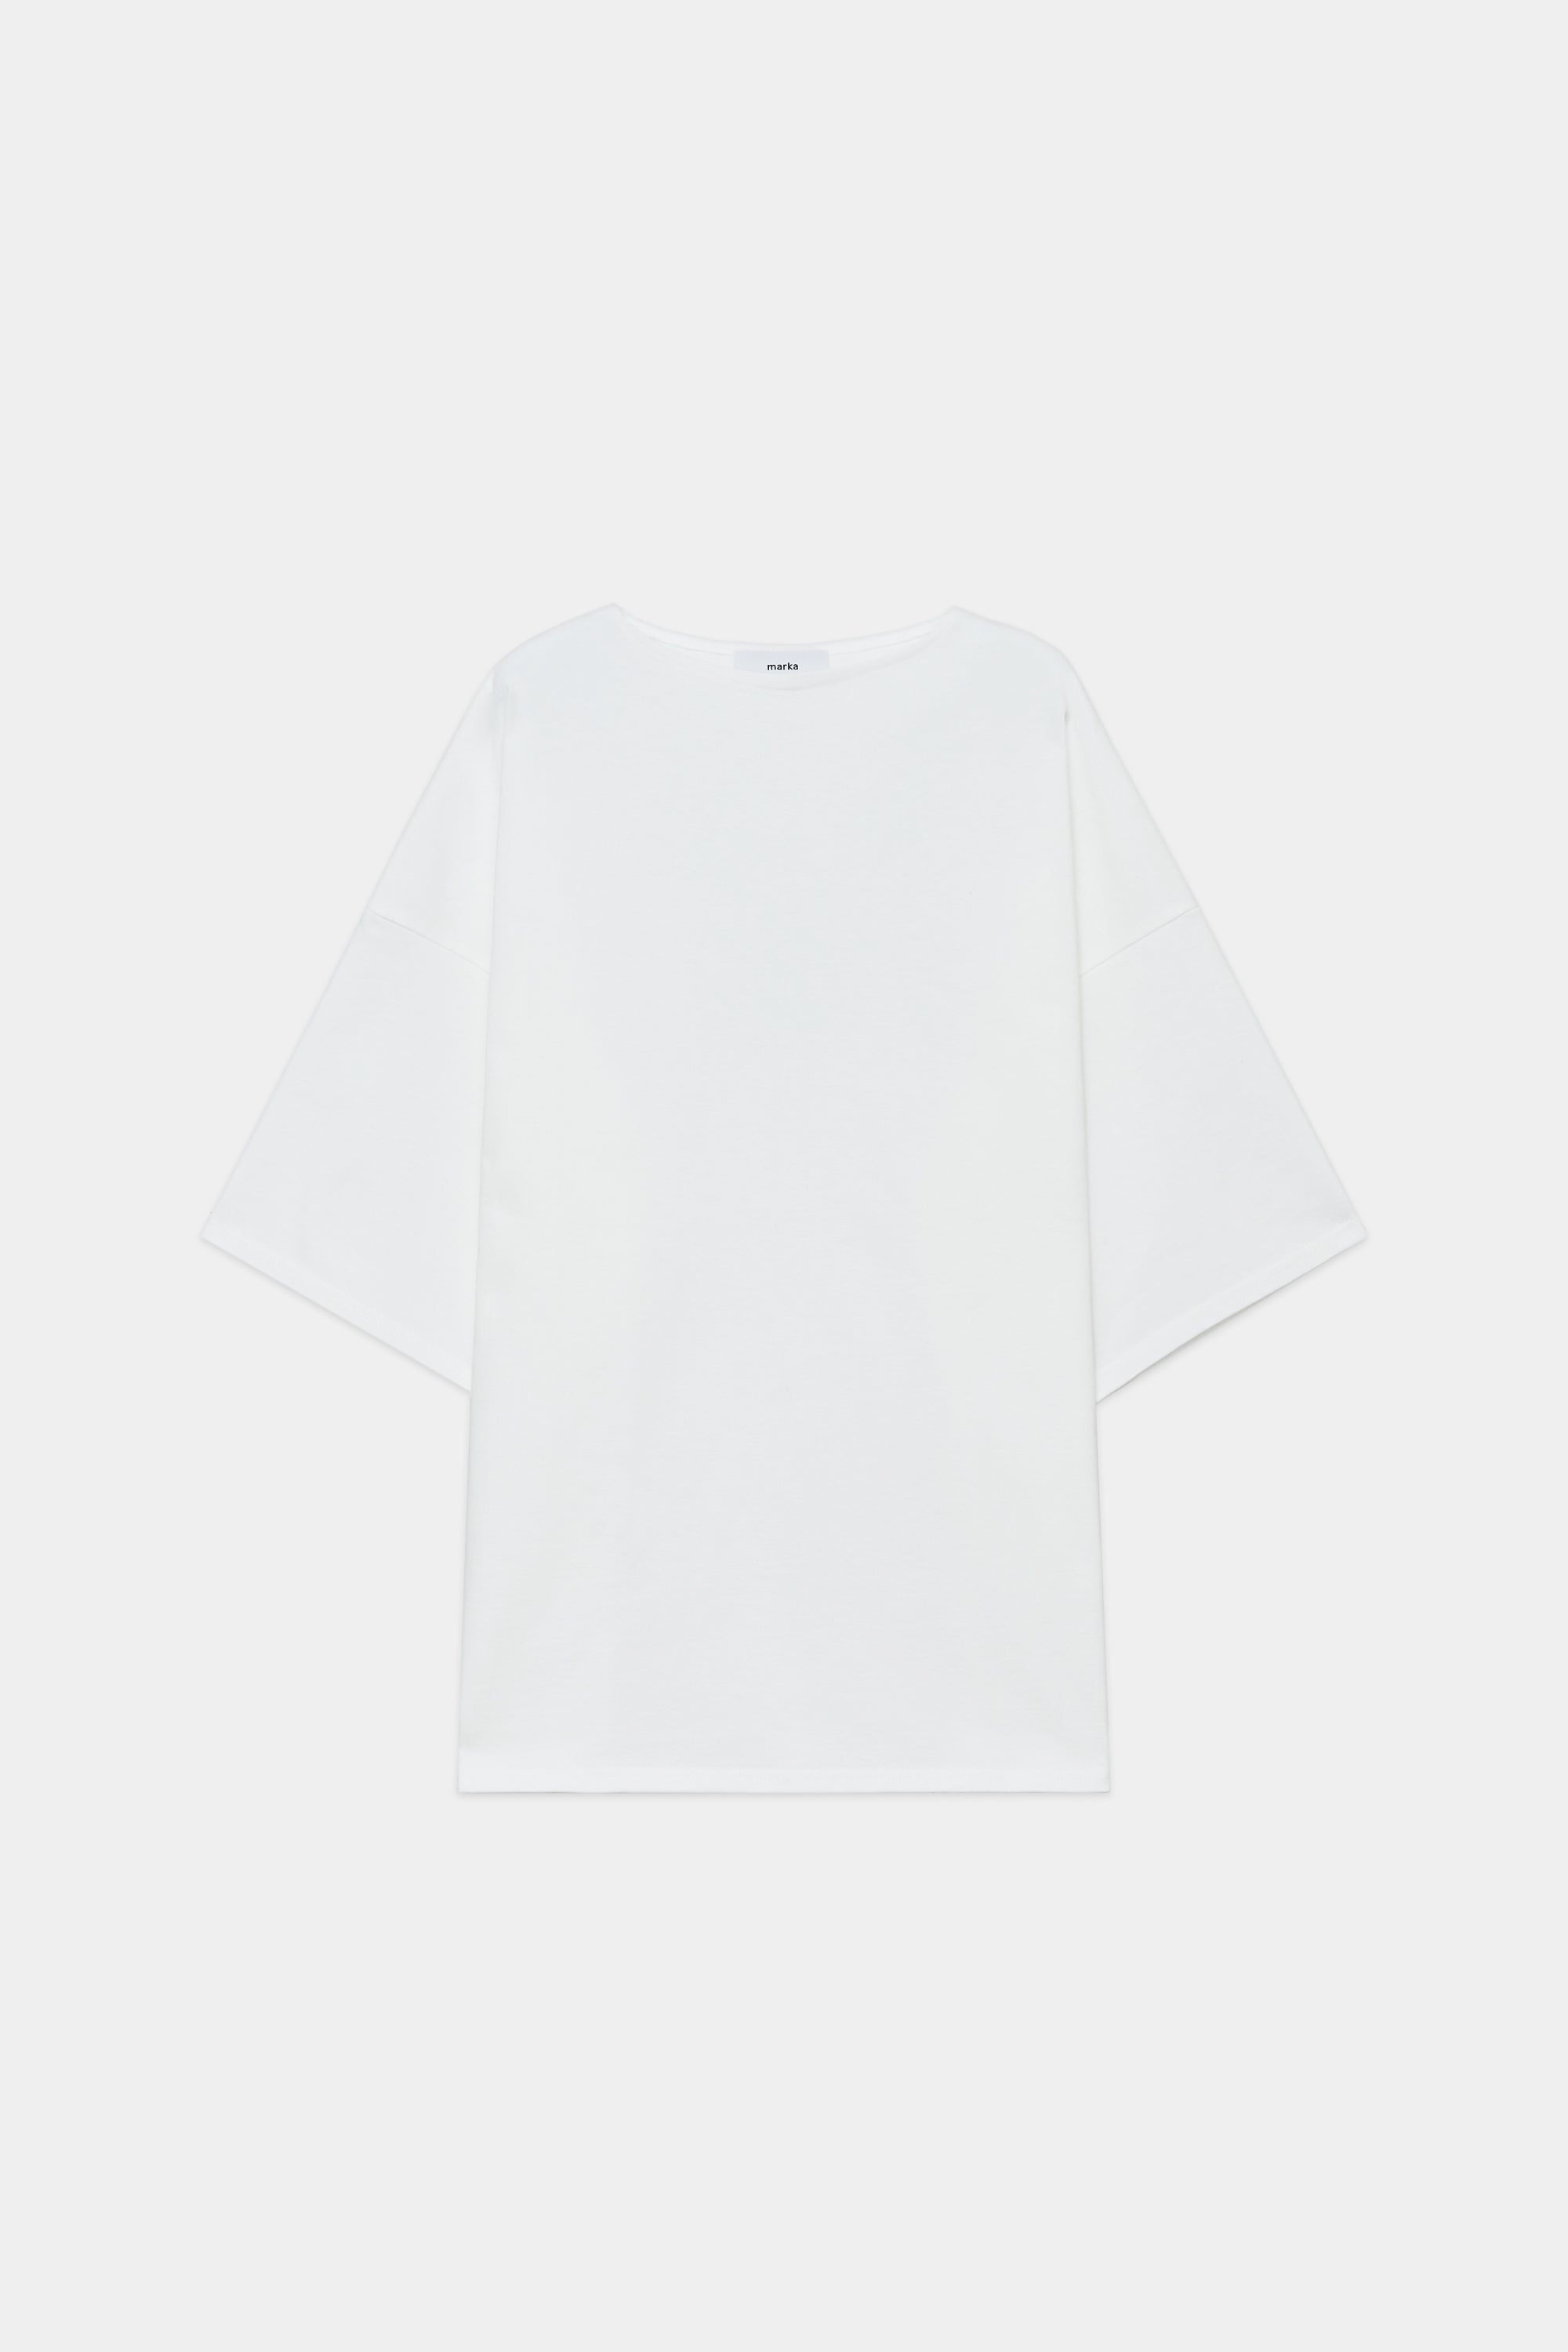 オーガニック コットン 30//2BD 天竺 別注バスクシャツ S/S, White